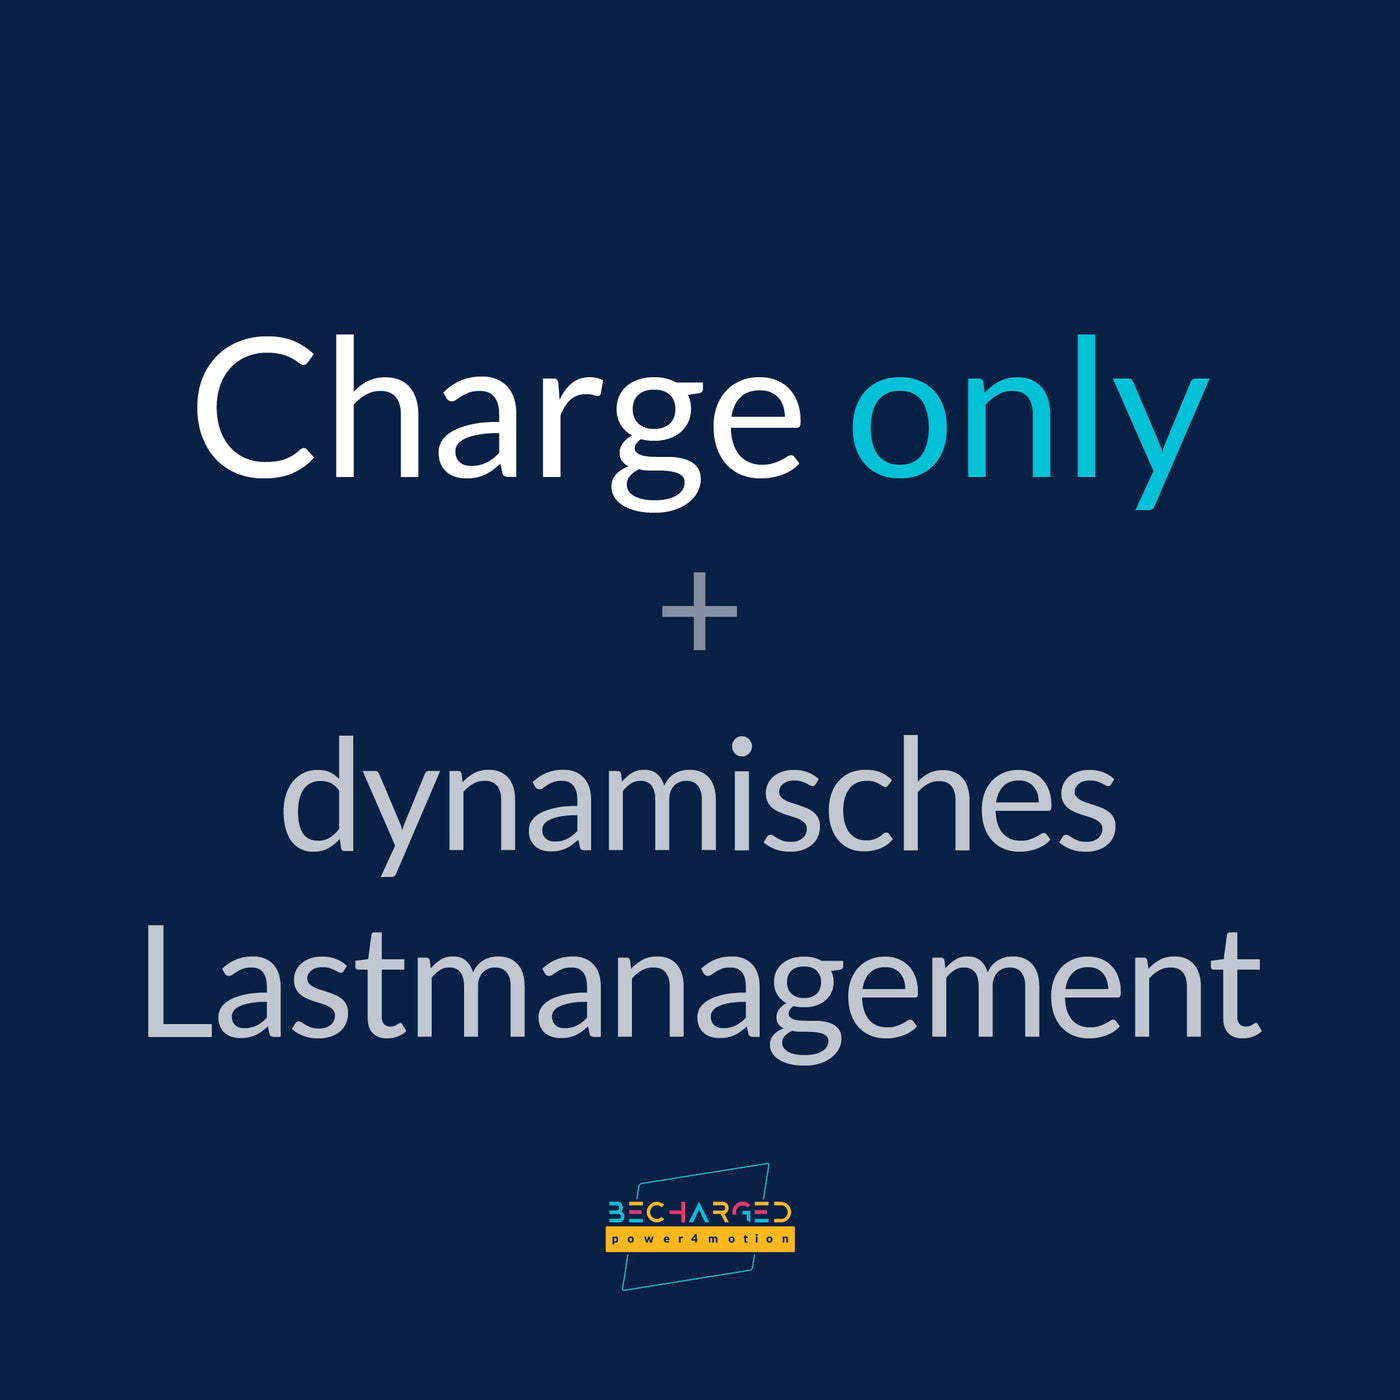 Ein dunkelblauer Hintergrund auf dem der Schriftzug Charge only + dynamisches Lastmanagement" steht. Unten das becharged Logo.